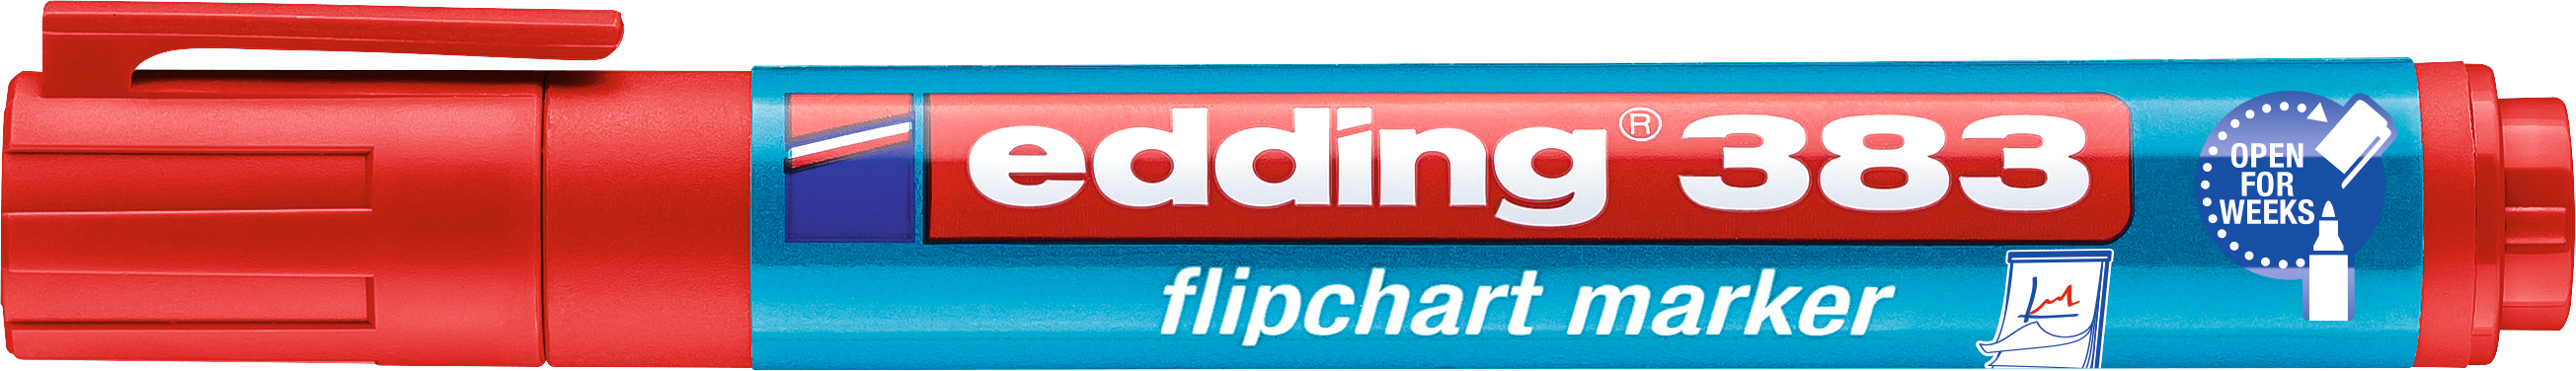 EDDING Flipchart Marker 383 1-5mm 383-2 rot